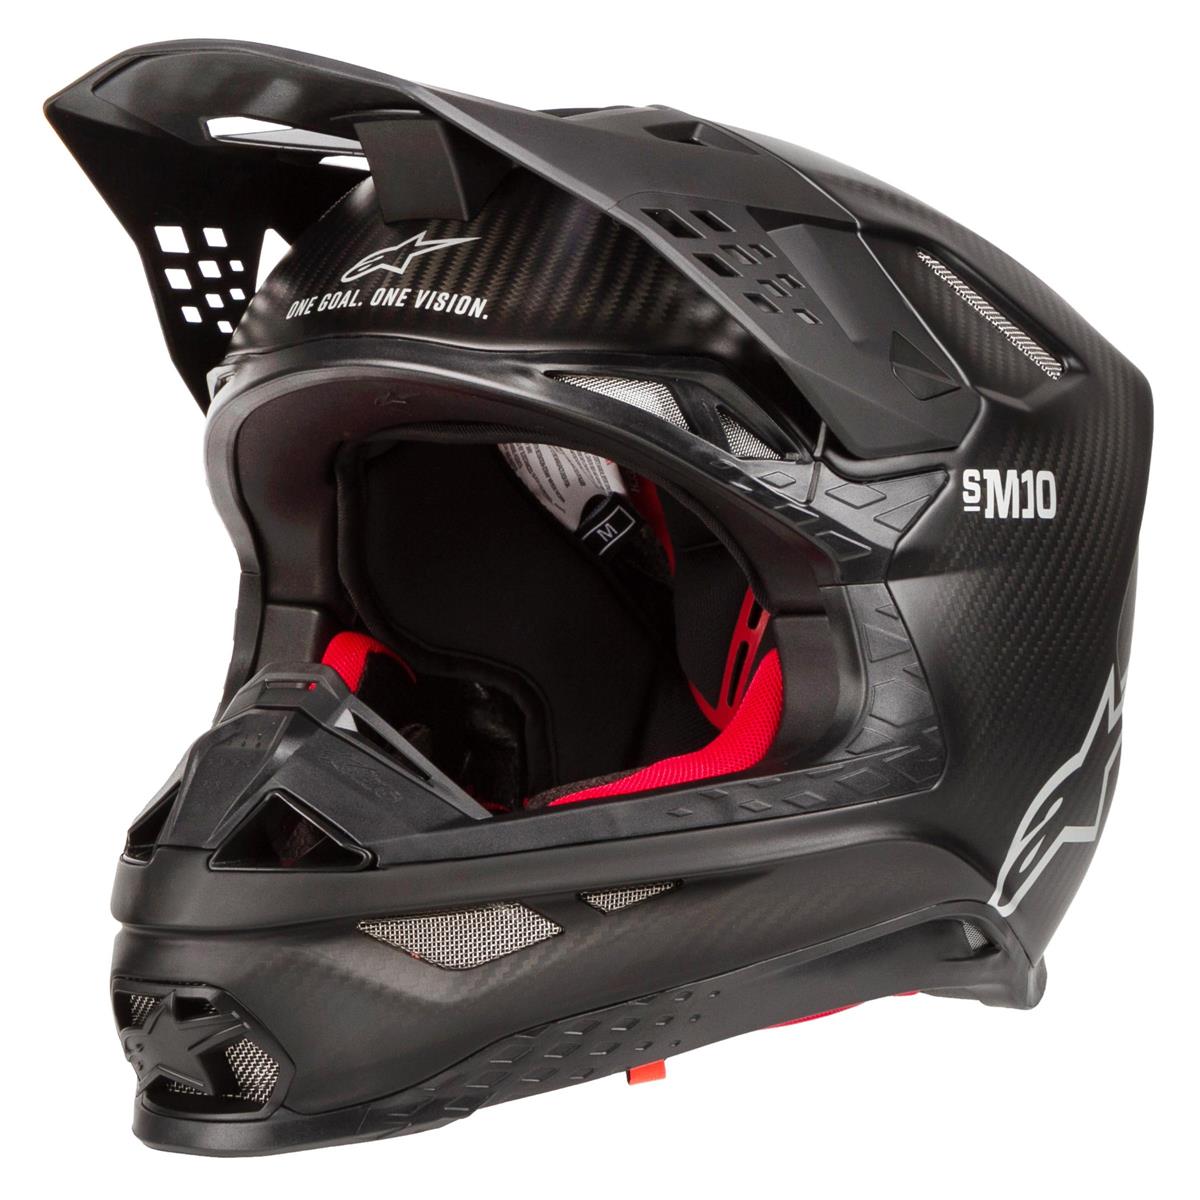 Alpinestars Motocross-Helm Supertech S-M10 Solid - Matt Schwarz Carbon